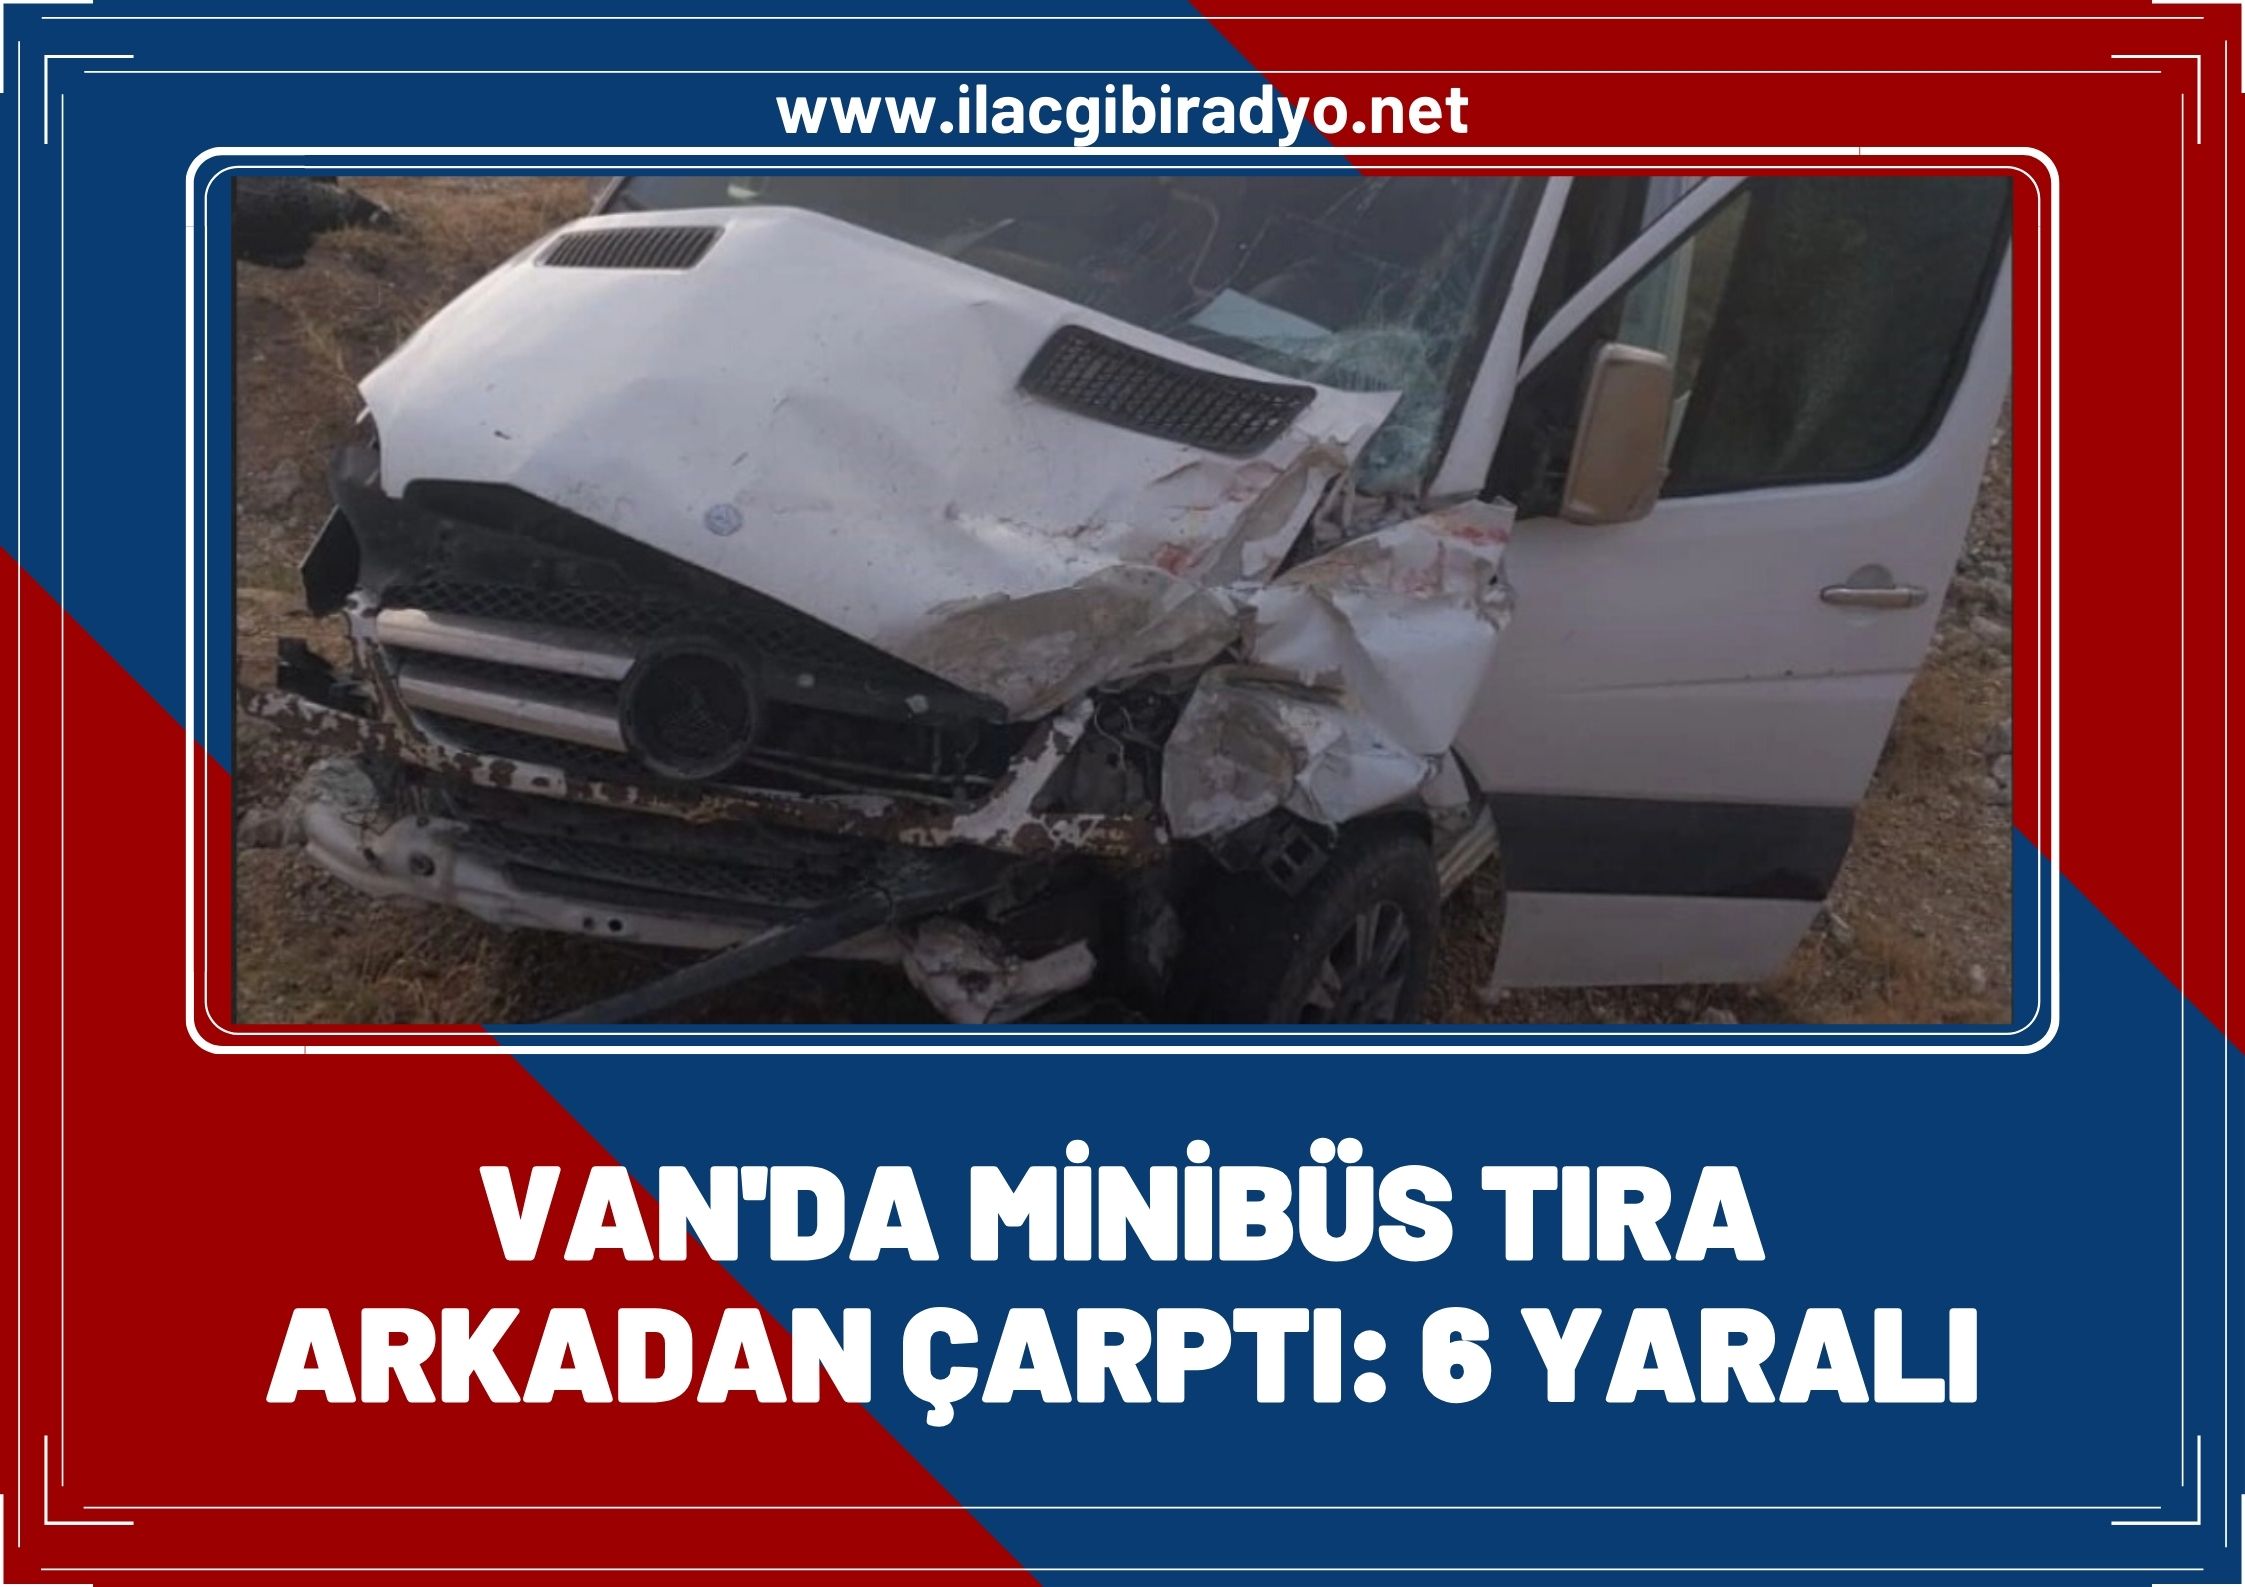 Van’da minibüs TIR’a arkadan çarptı, 6 kişi yaralandı!